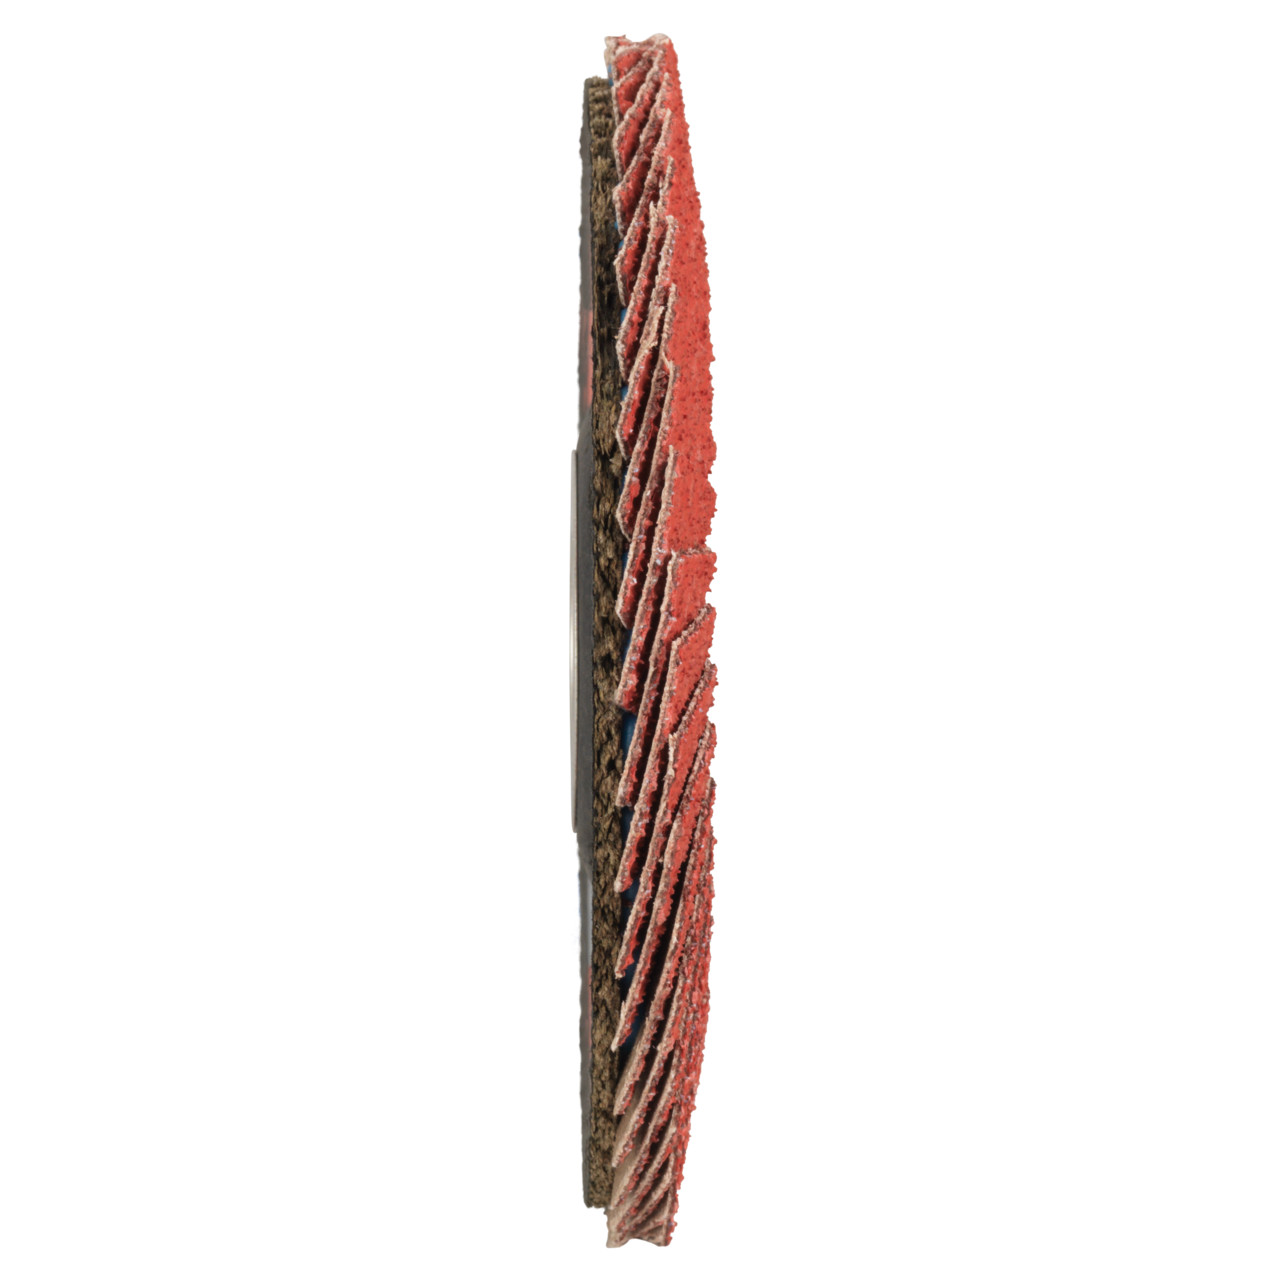 Rondella dentata Tyrolit DxH 125x22.23 CERAMICA per acciaio inox, P80, forma: 27A - design offset (corpo portante in fibra di vetro), Art. 34166671